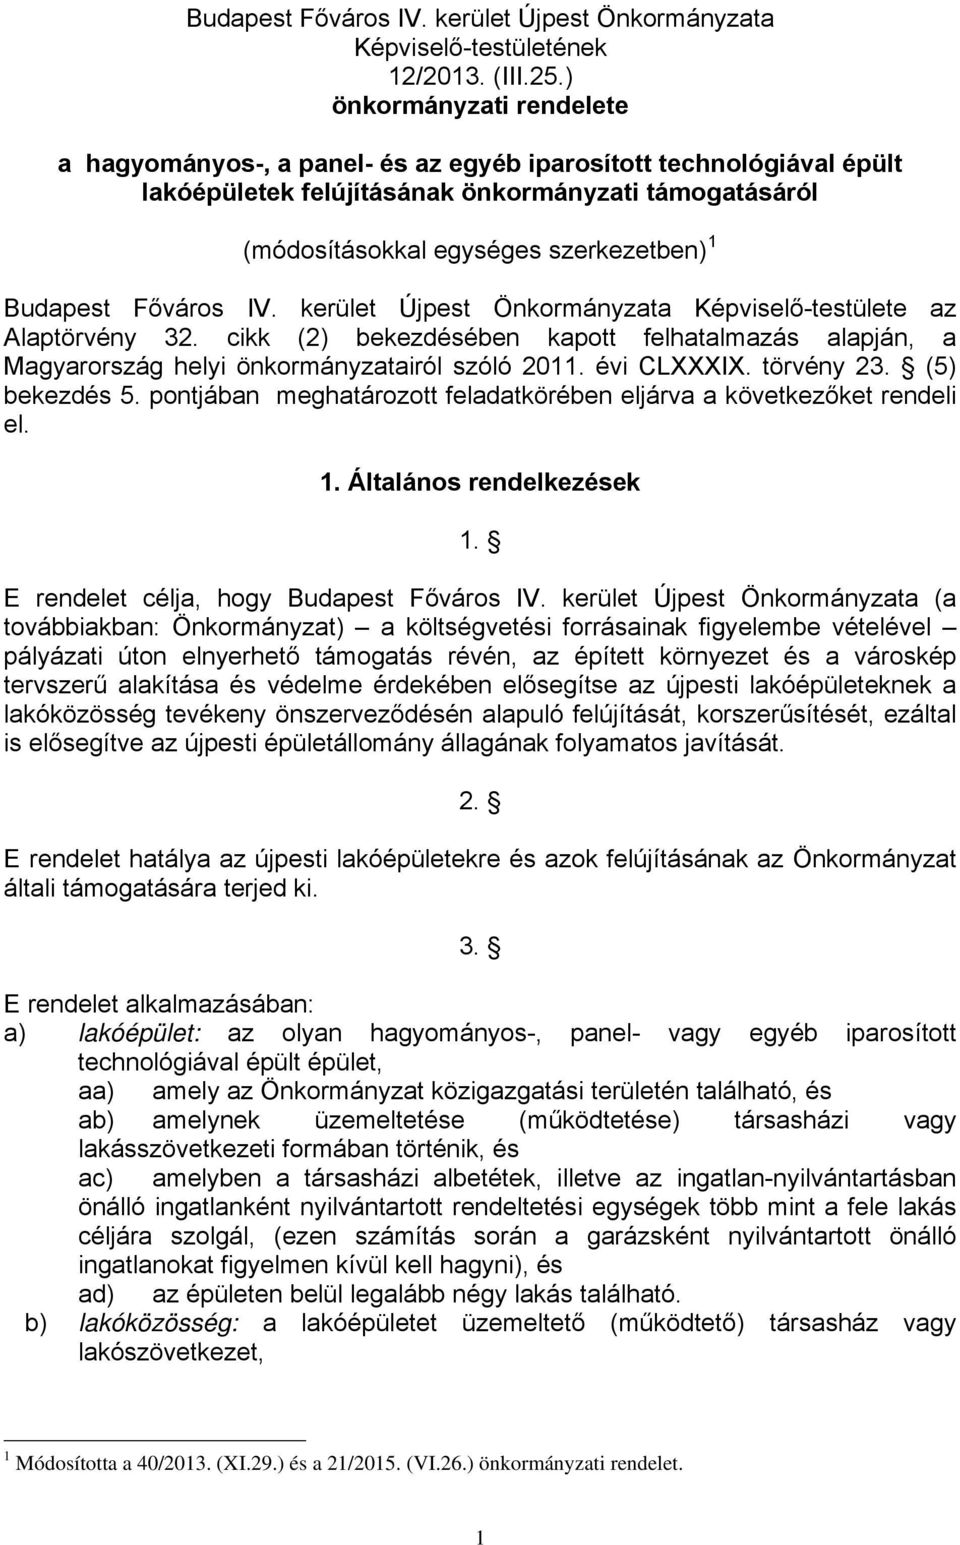 Budapest Főváros IV. kerület Újpest Önkormányzata Képviselő-testülete az Alaptörvény 32. cikk (2) bekezdésében kapott felhatalmazás alapján, a Magyarország helyi önkormányzatairól szóló 2011.